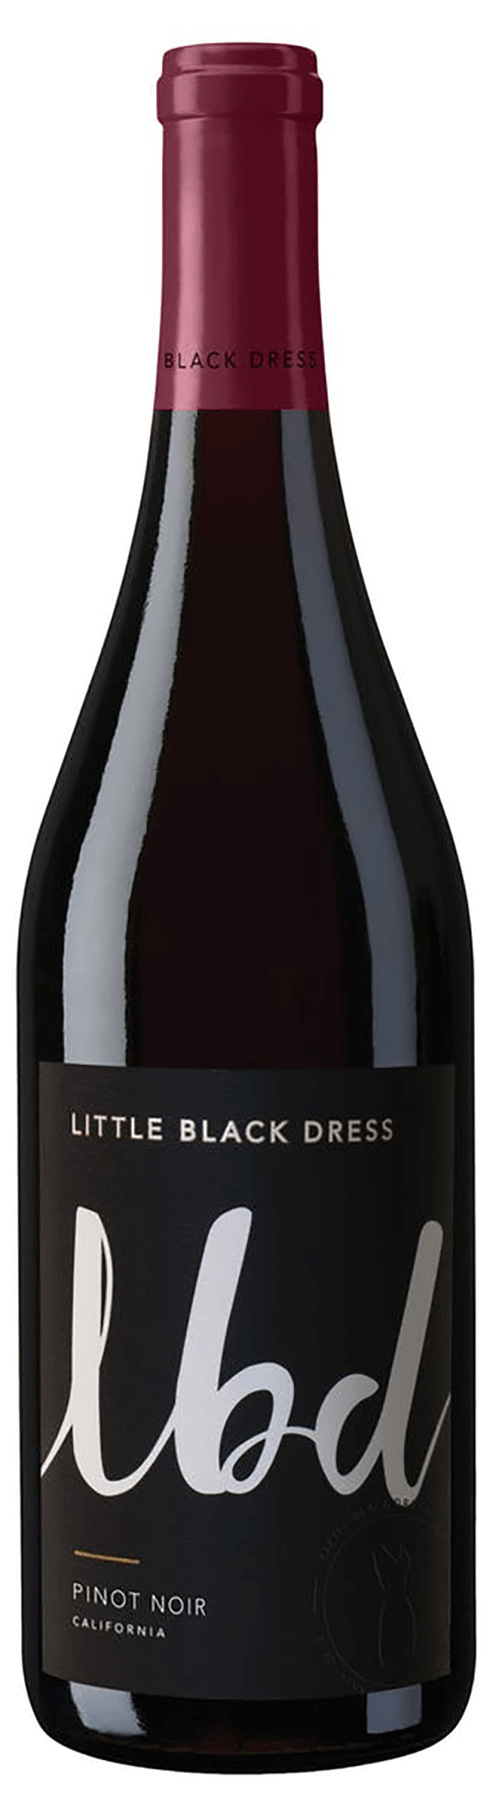 Little Black Dress Pinot Noir 2015